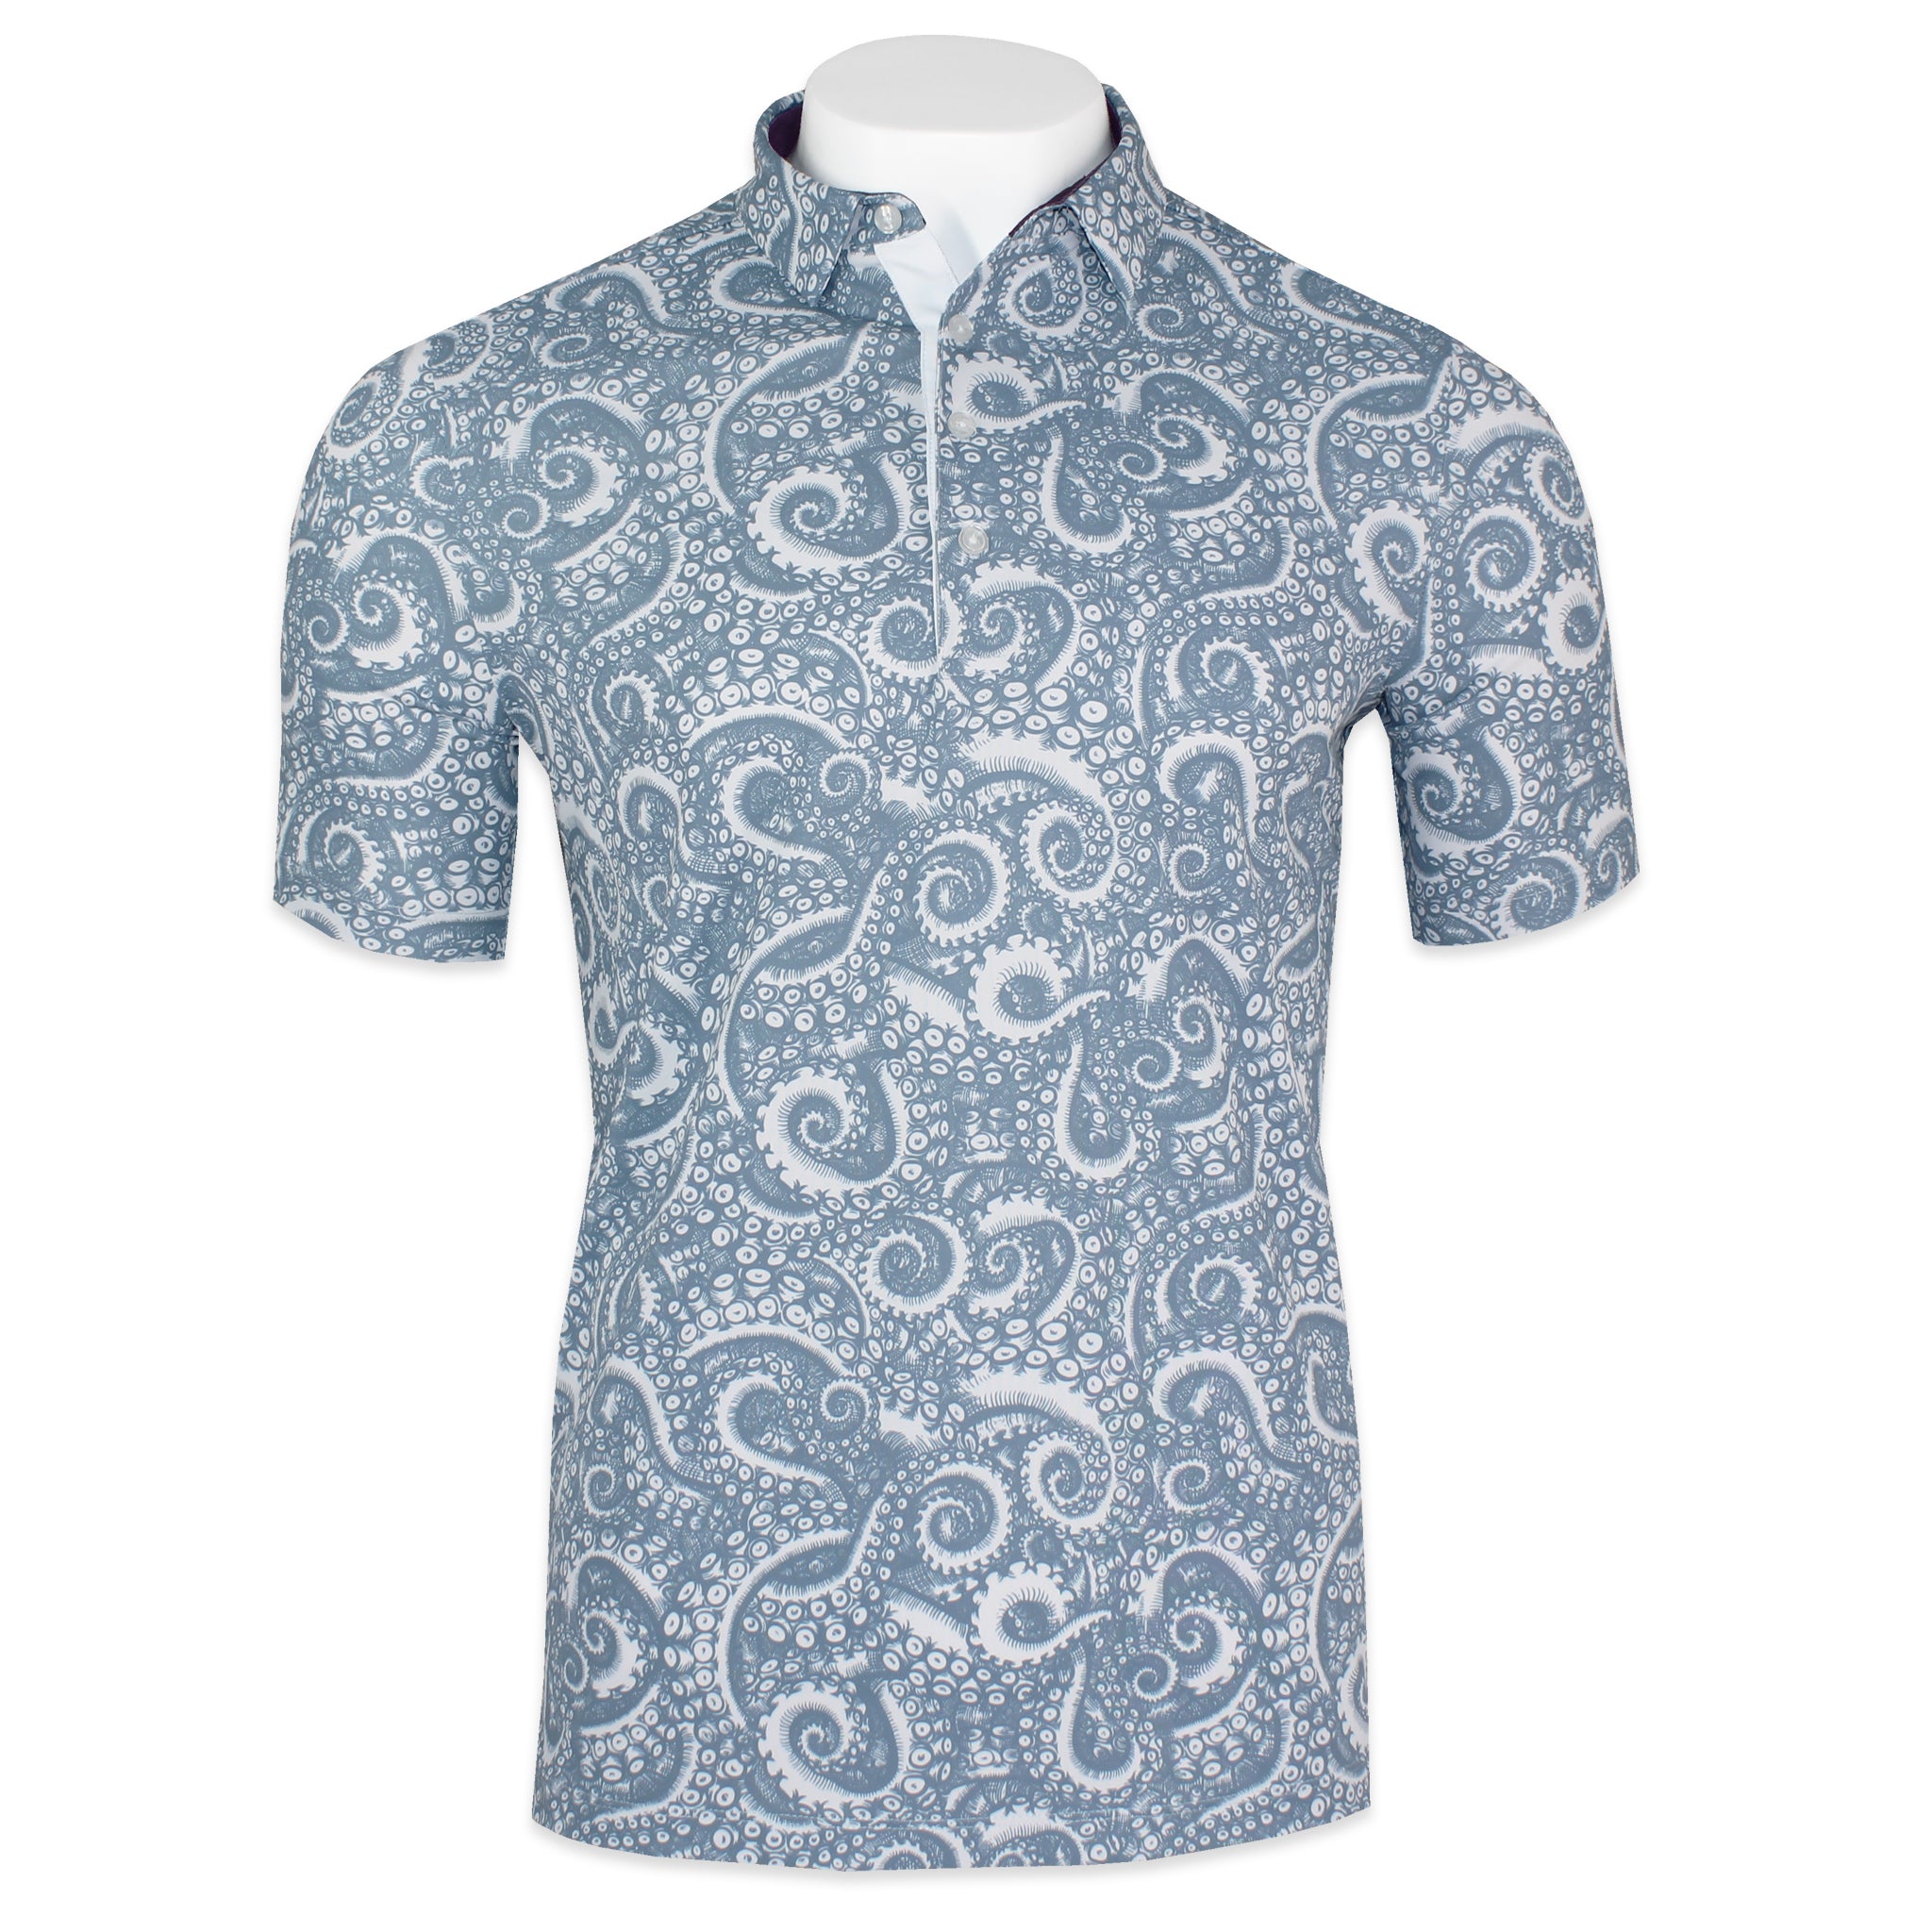 'Octopus Seamless' Four Button Golf Shirt